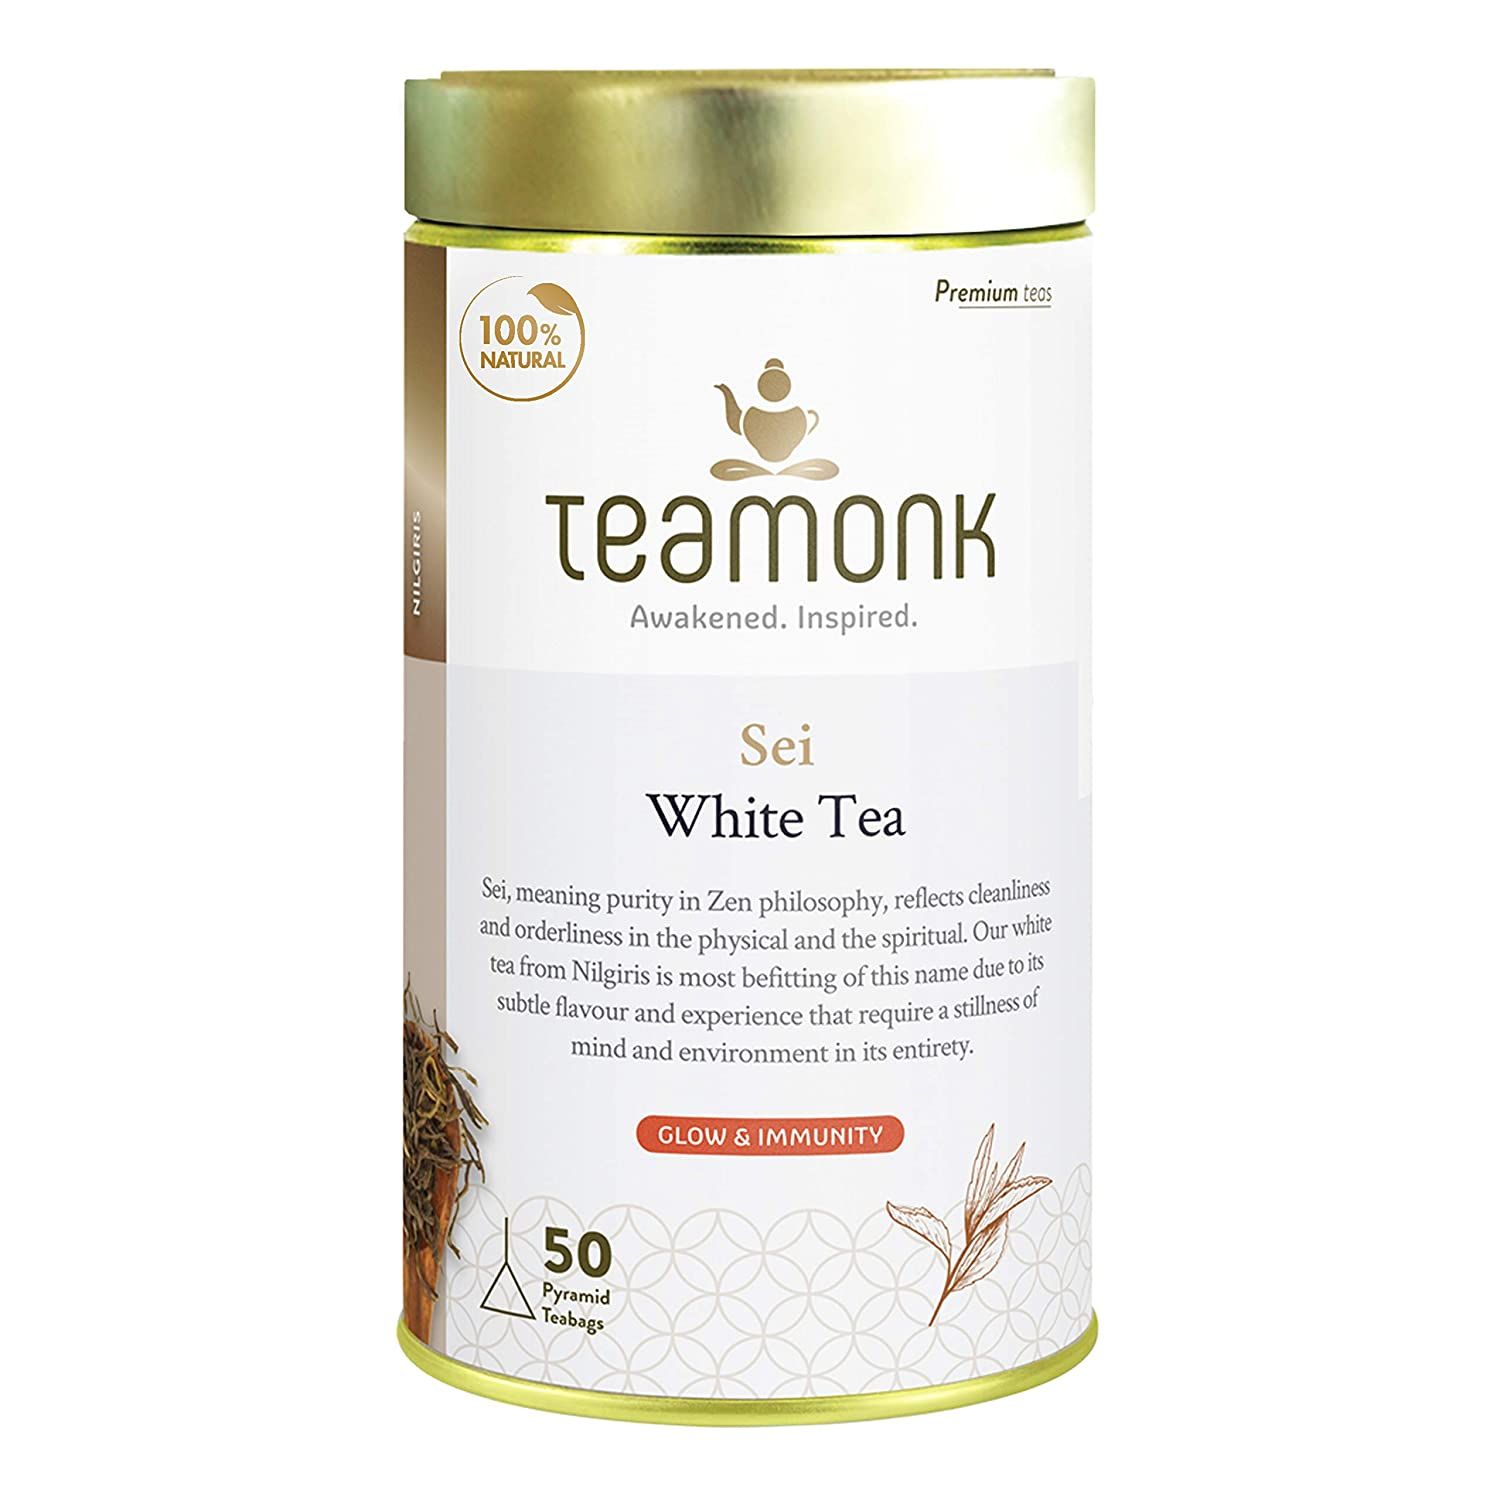 Teamonk Sei White Tea Image